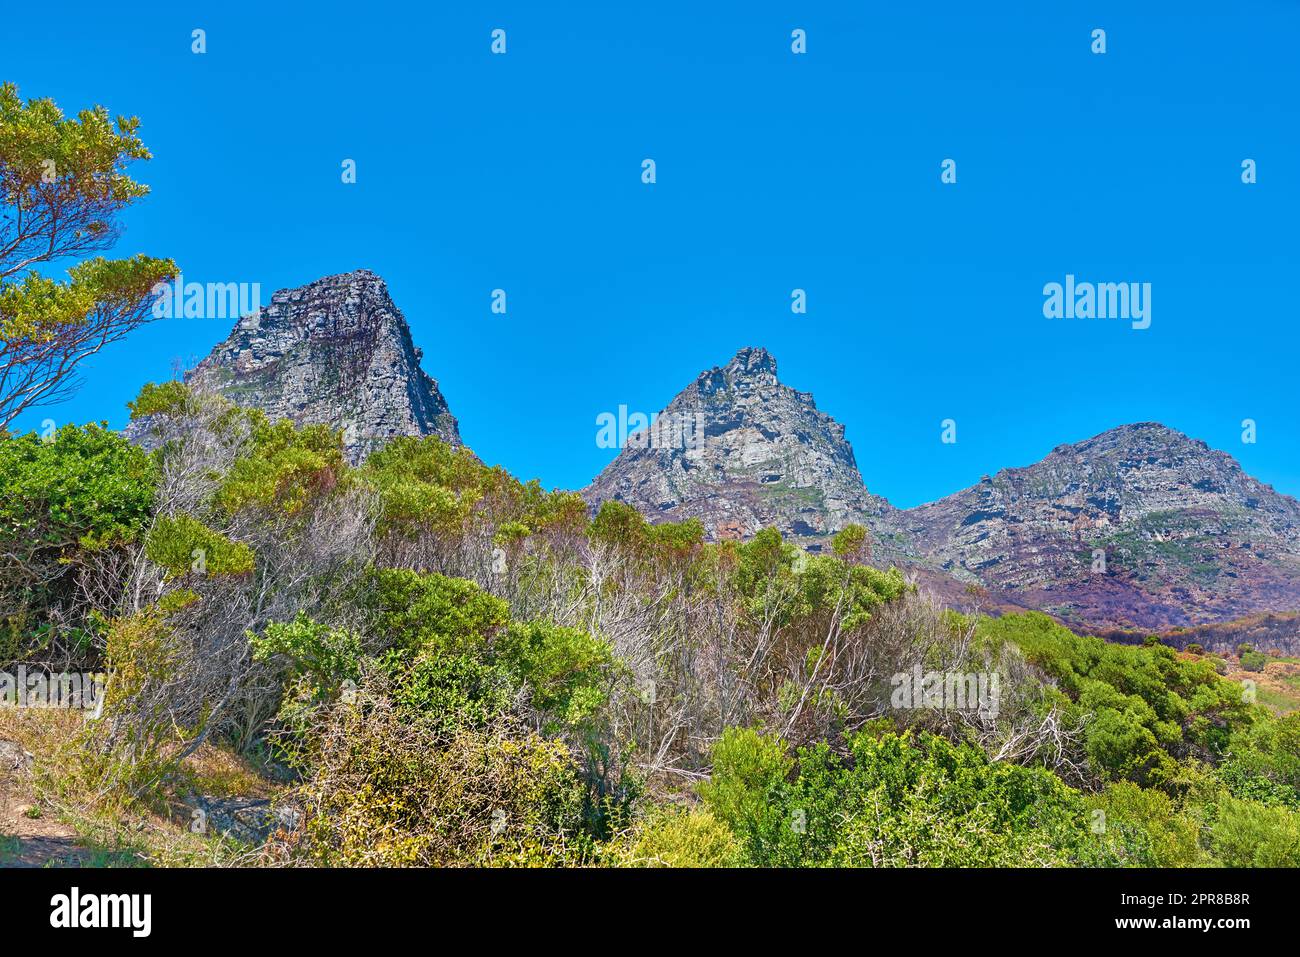 Landschaftsblick auf die Twelve Apostles Mountains in Kapstadt, Südafrika, mit blauem Himmel und Kopierraum. Steiles, landschaftlich berühmtes Wandergelände mit wachsenden Bäumen, Büschen und Sträuchern. Reisen und Tourismus Stockfoto